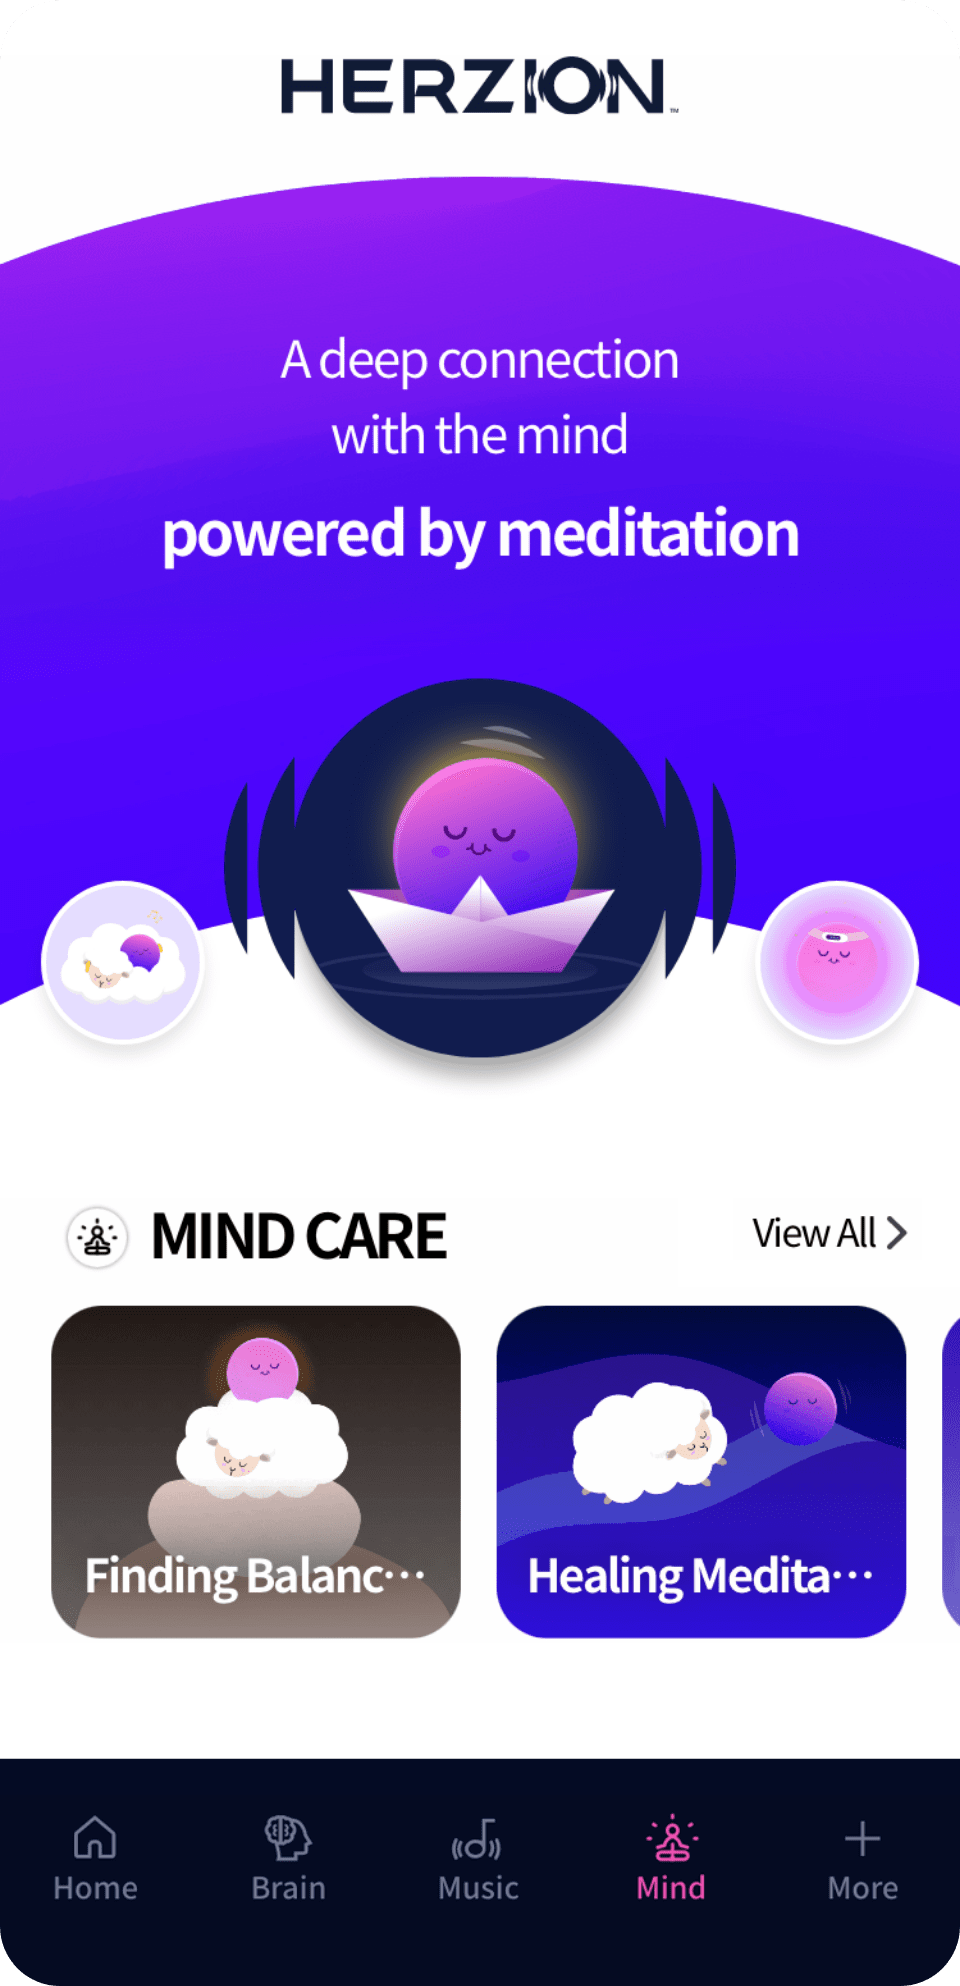 Mind care